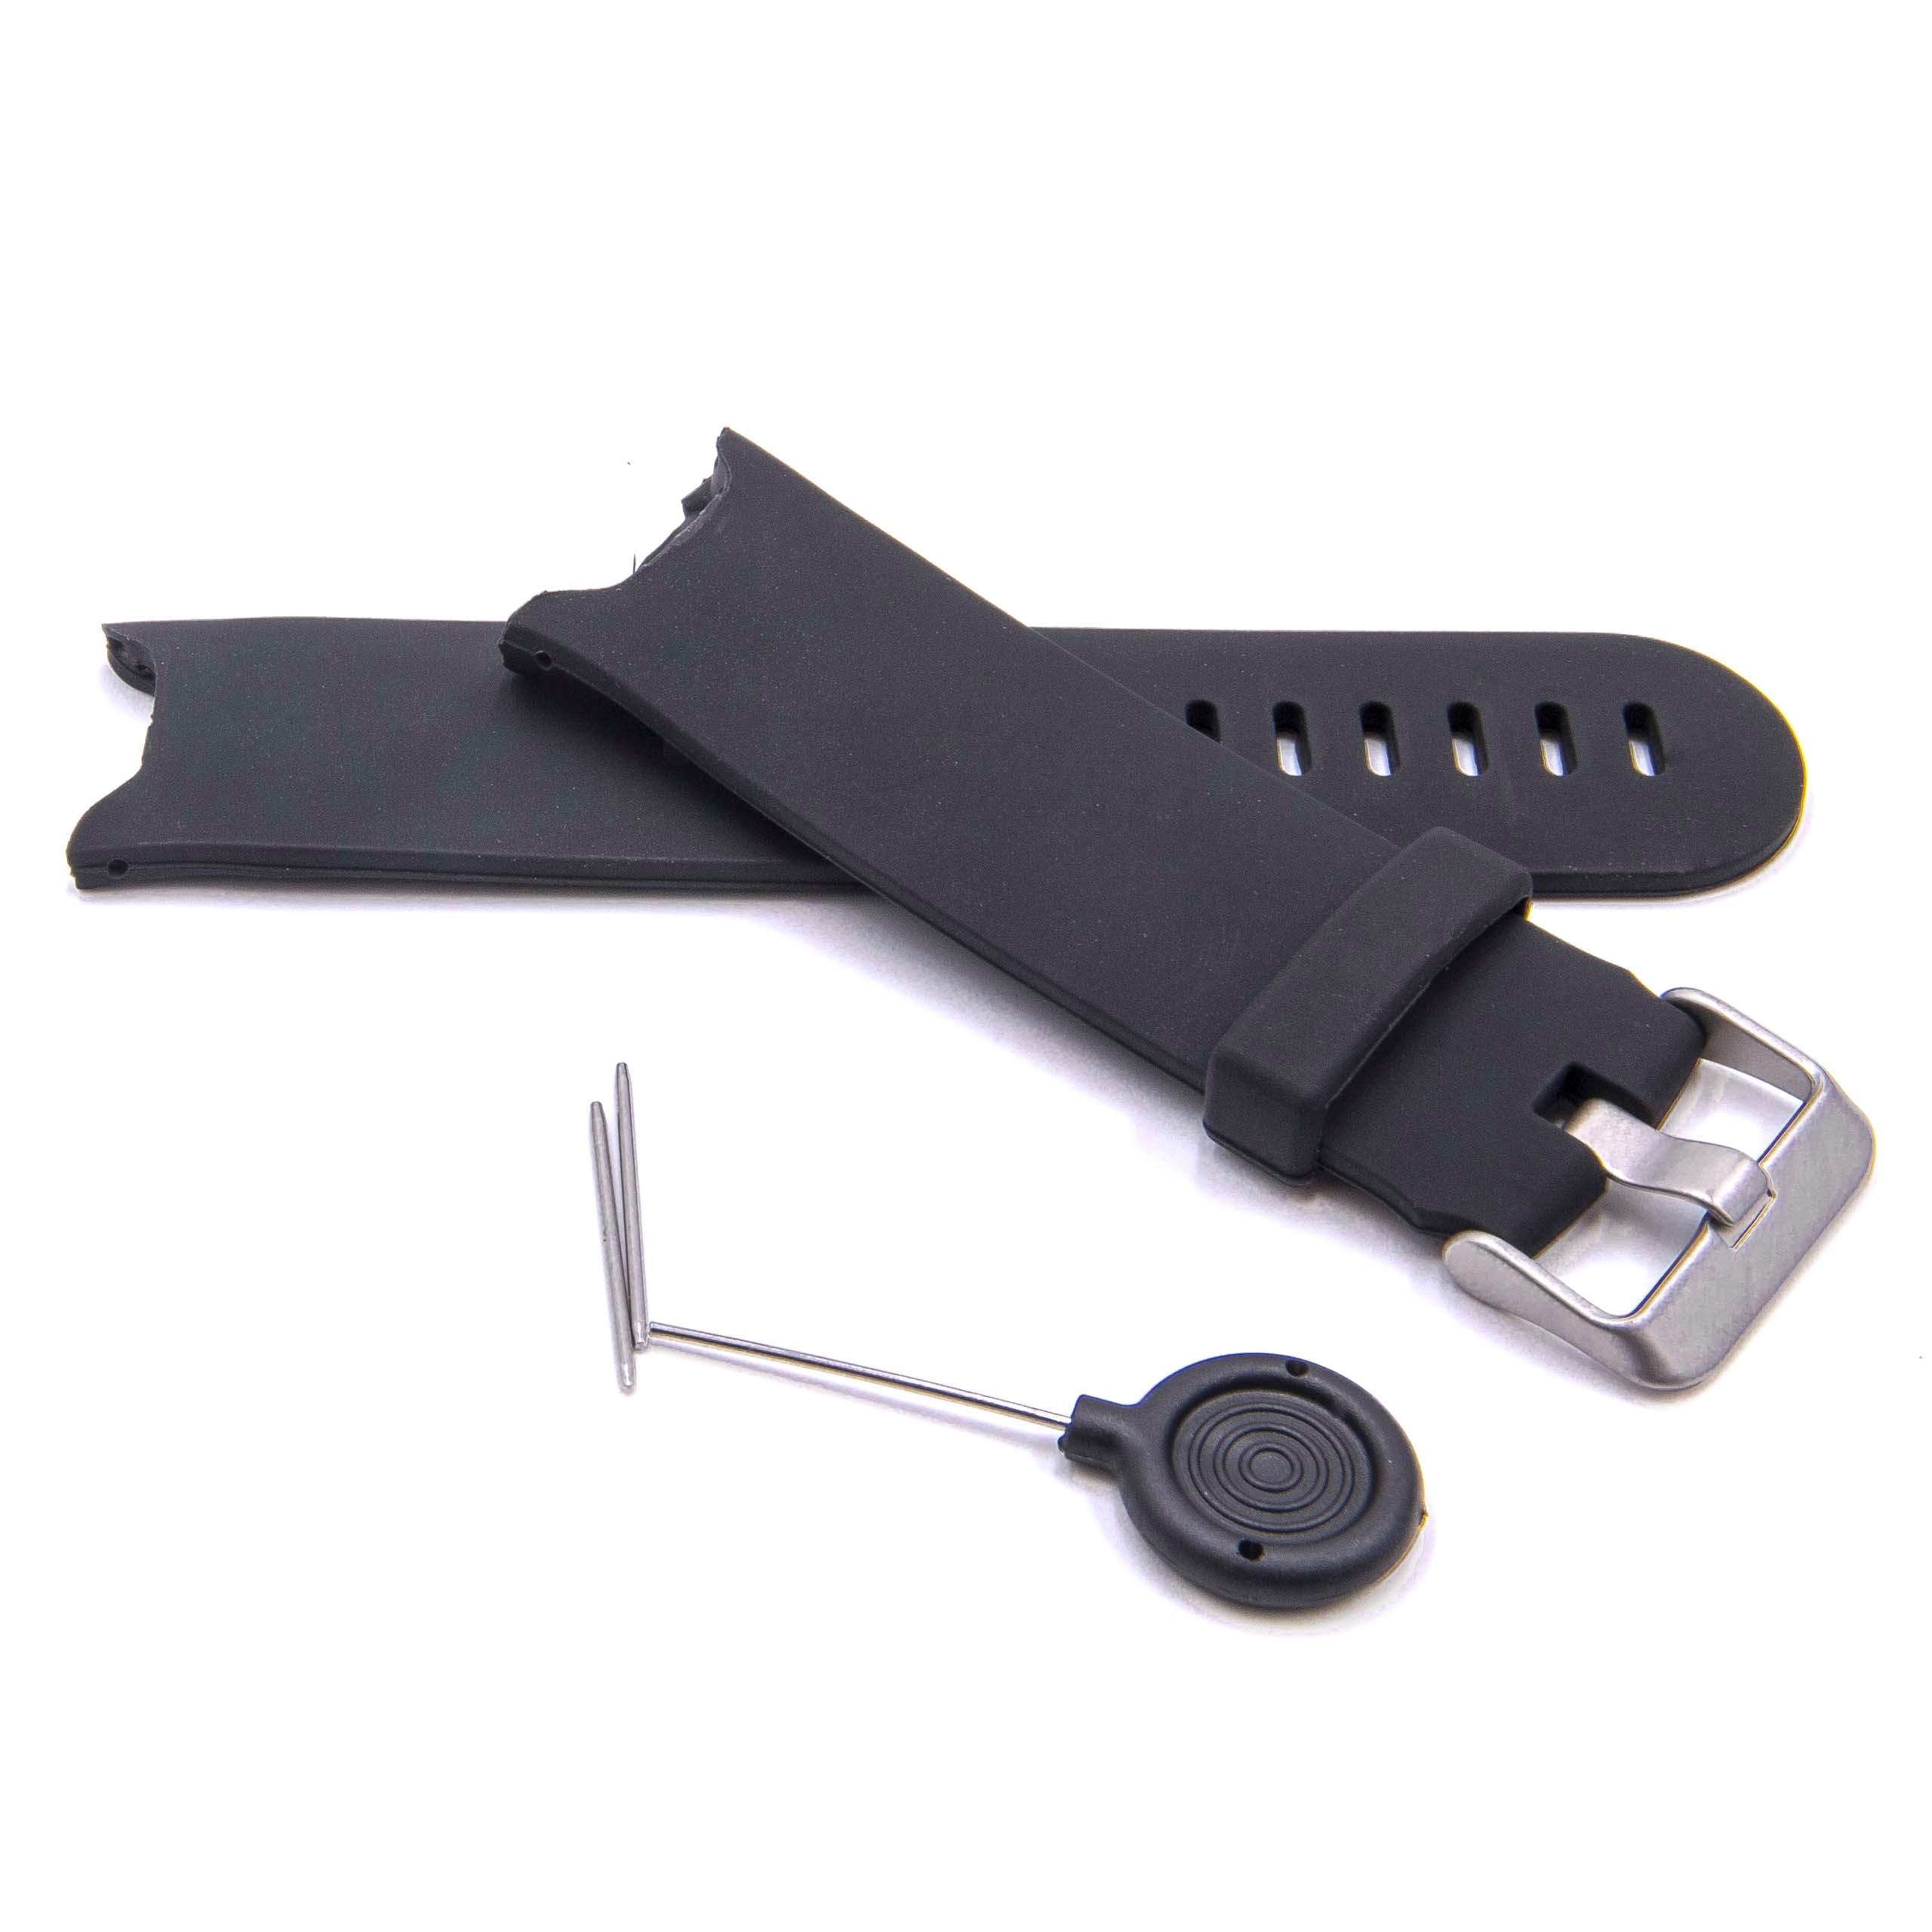 Bracelet pour montre intelligente Garmin Approach - 11,7cm + 9,2 cm de long, 24mm de large, silicone, noir